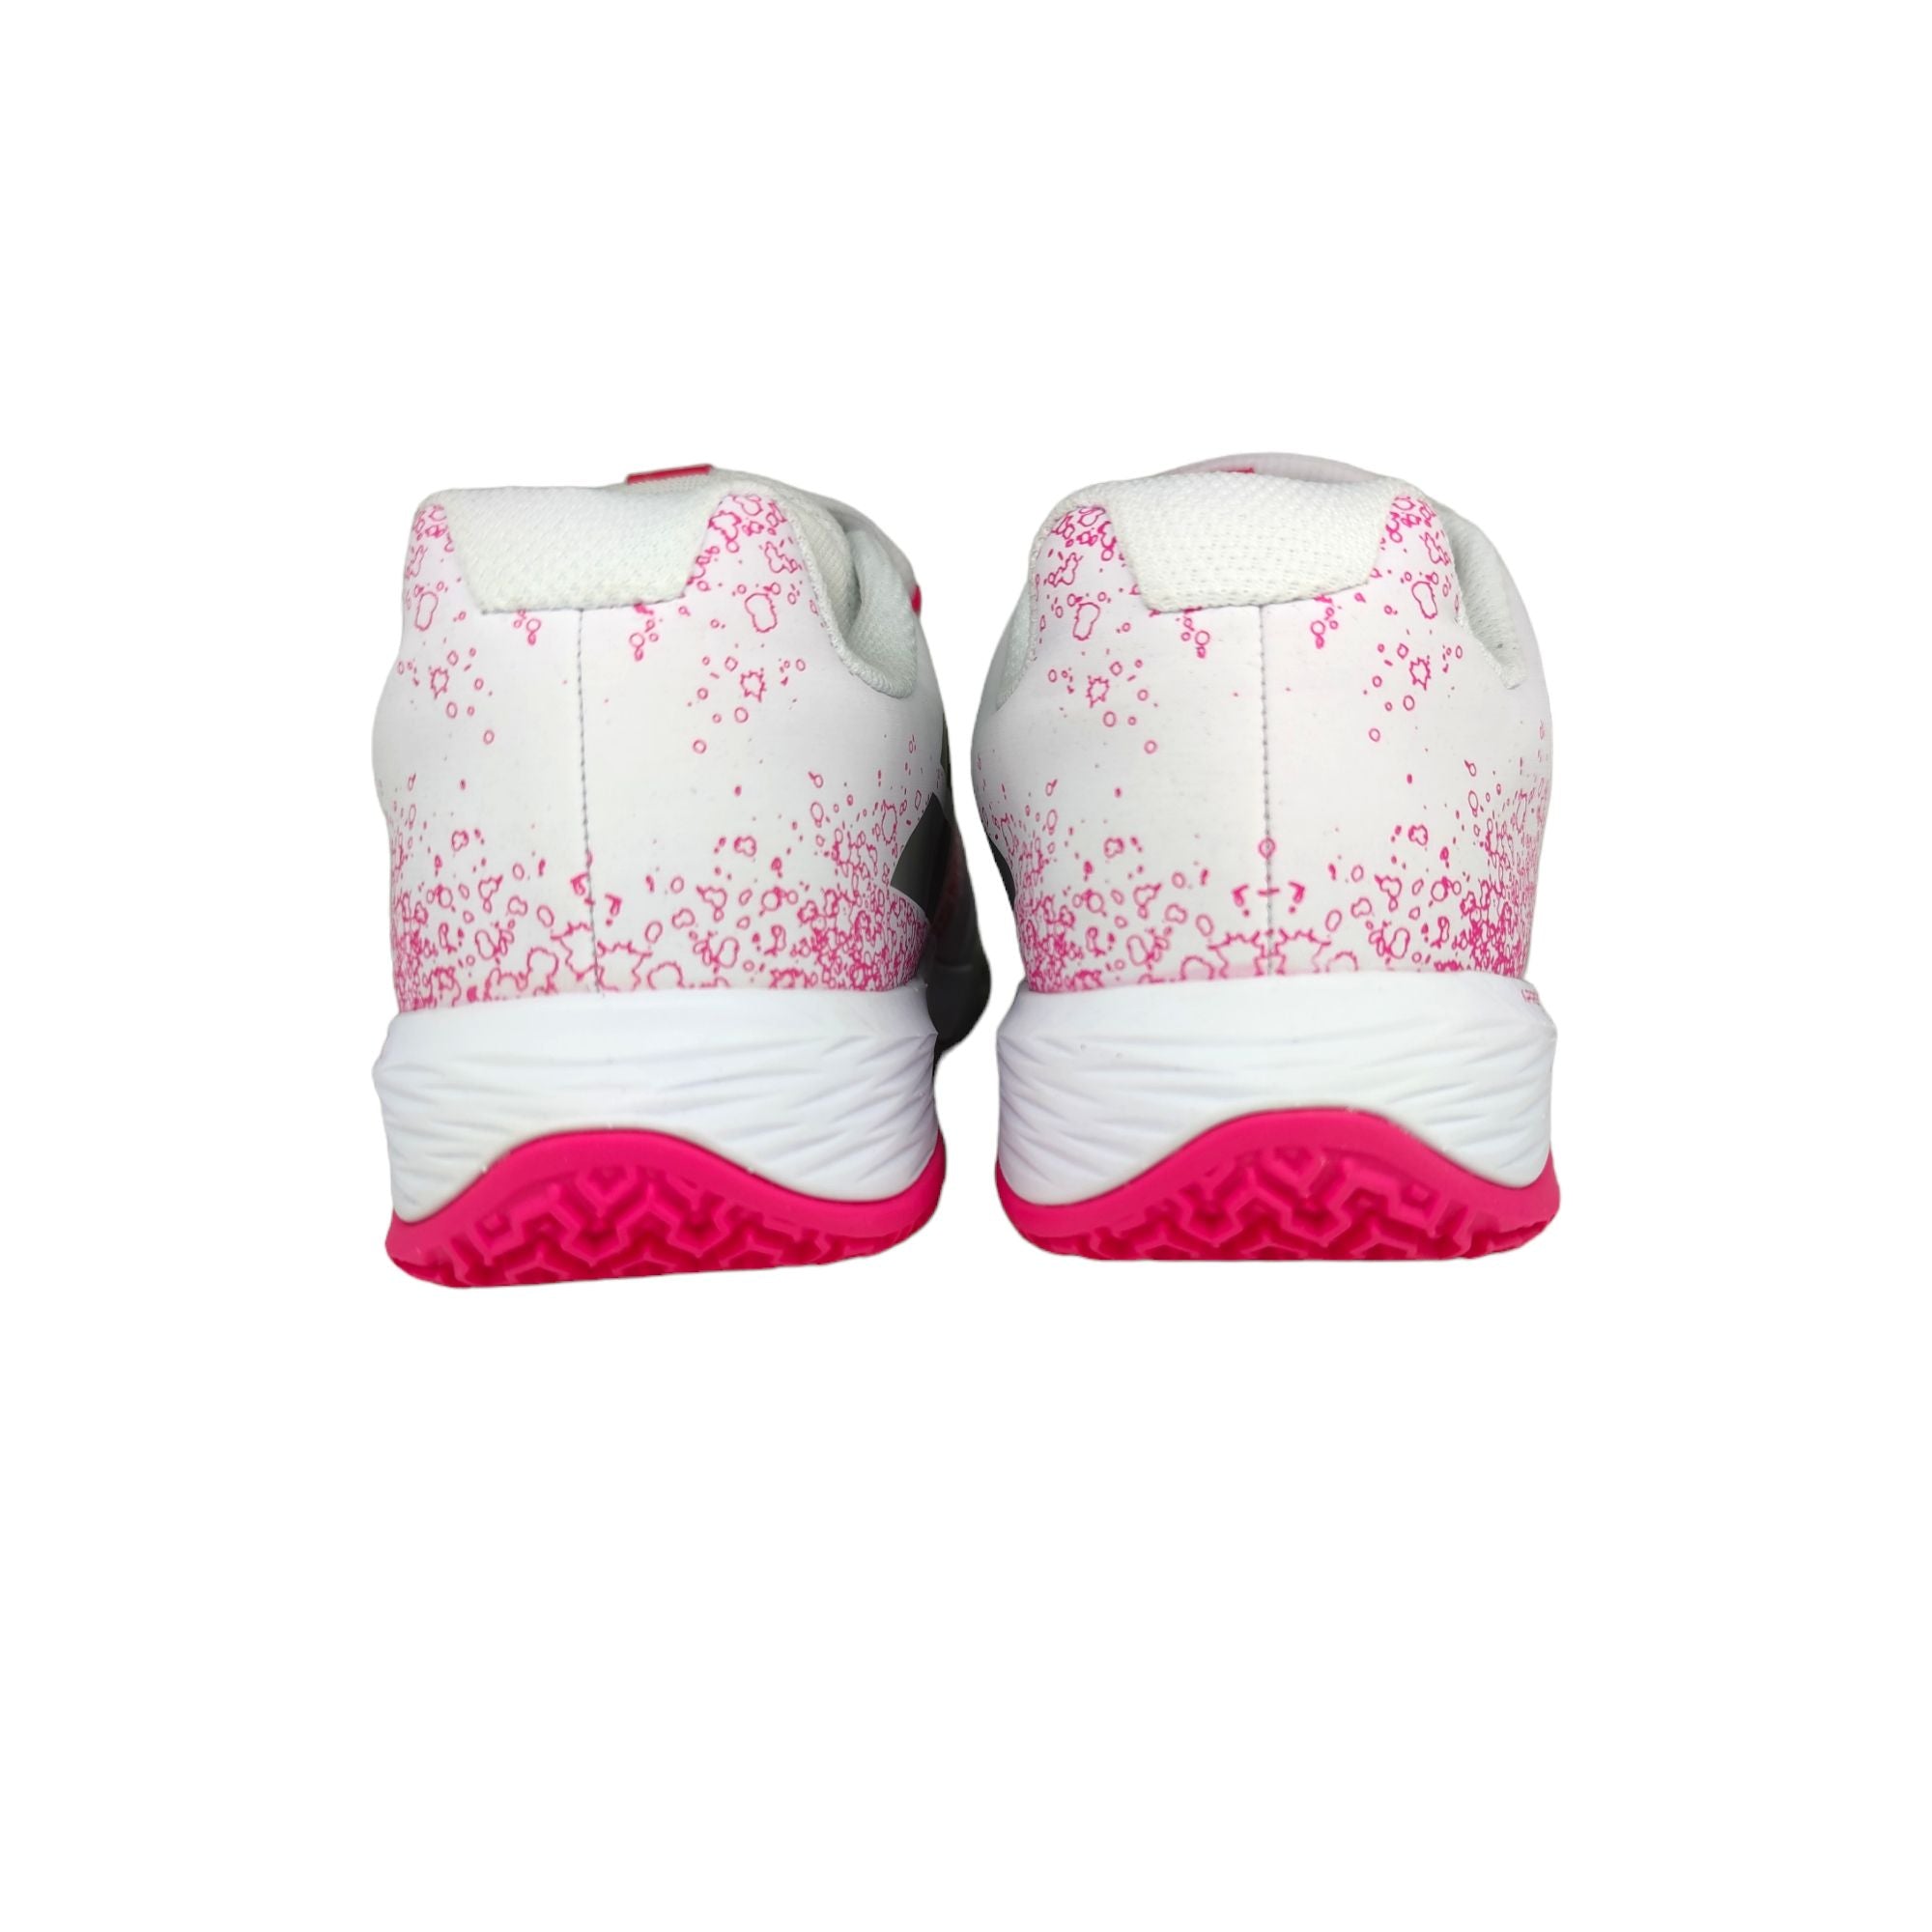 Women's Sensa Padel Shoes White/Pink Peacock 